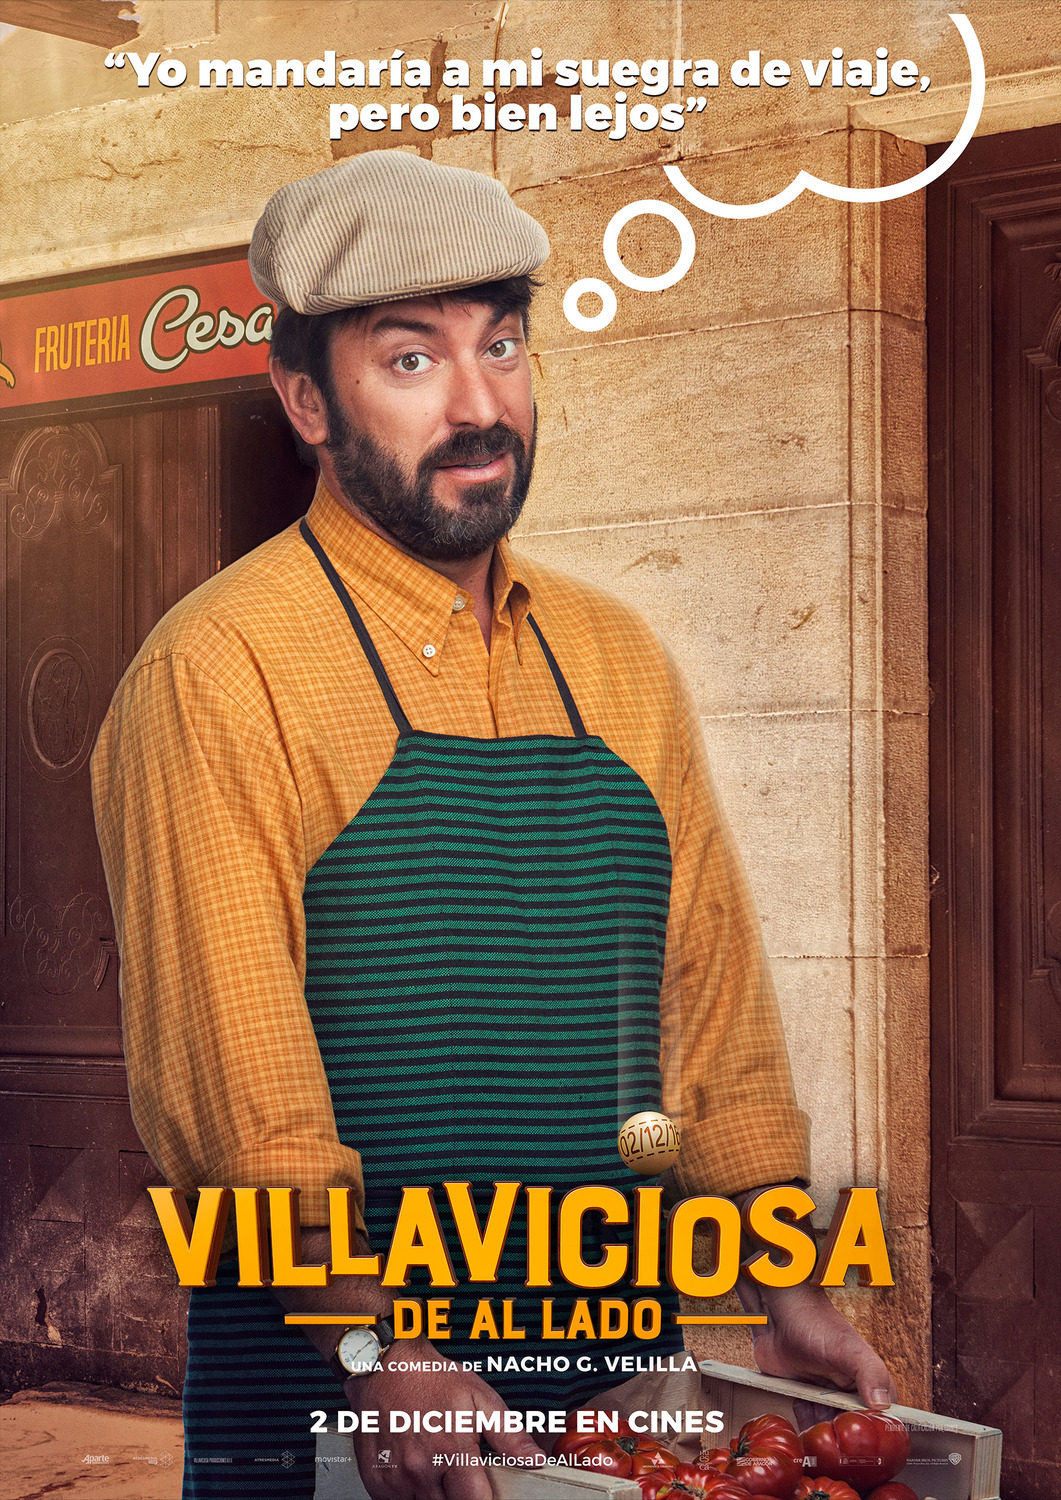 Extra Large Movie Poster Image for Villaviciosa de al lado (#8 of 8)